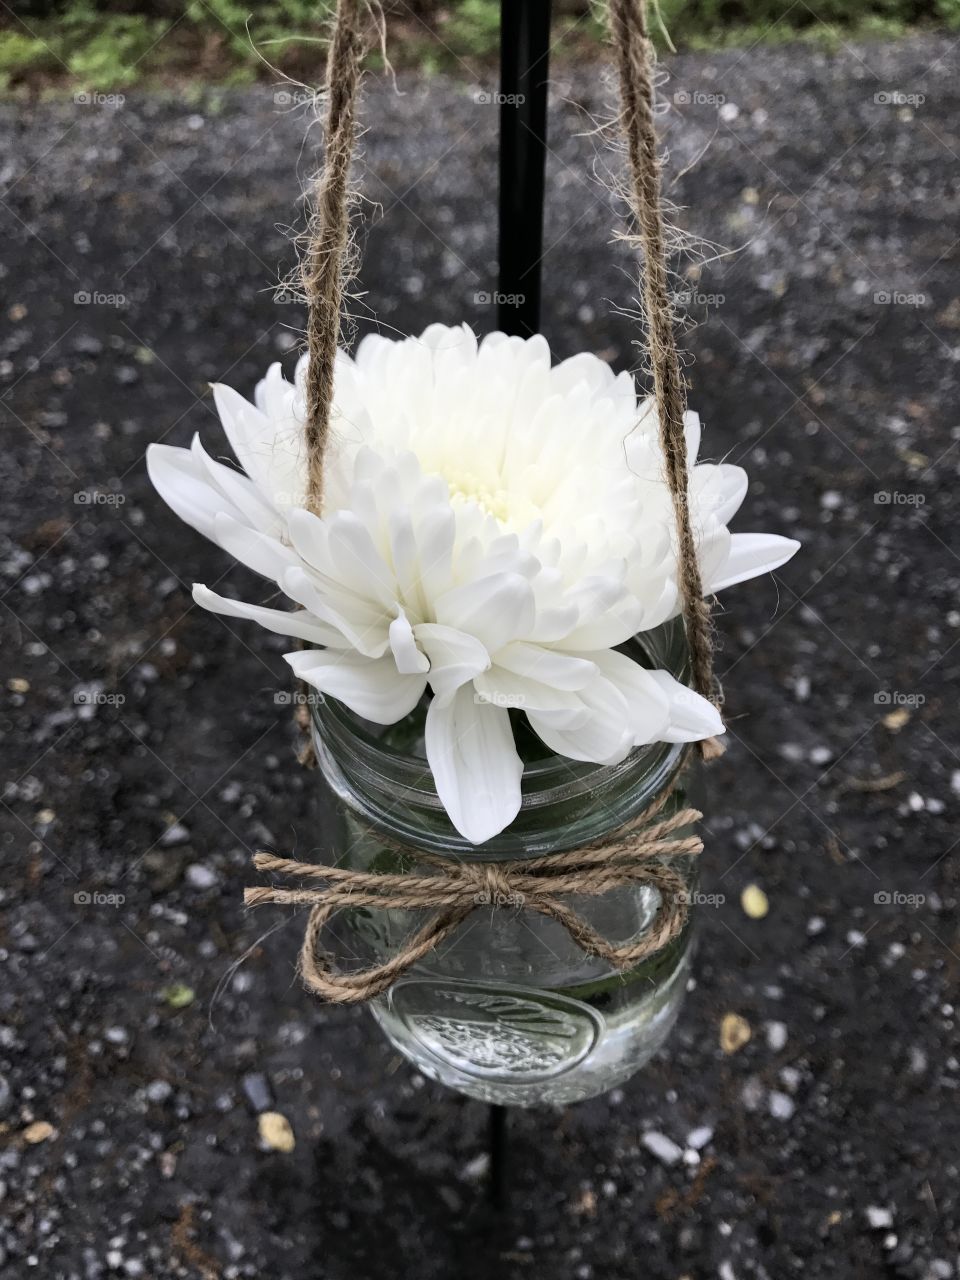 Flower in hanging mason jar